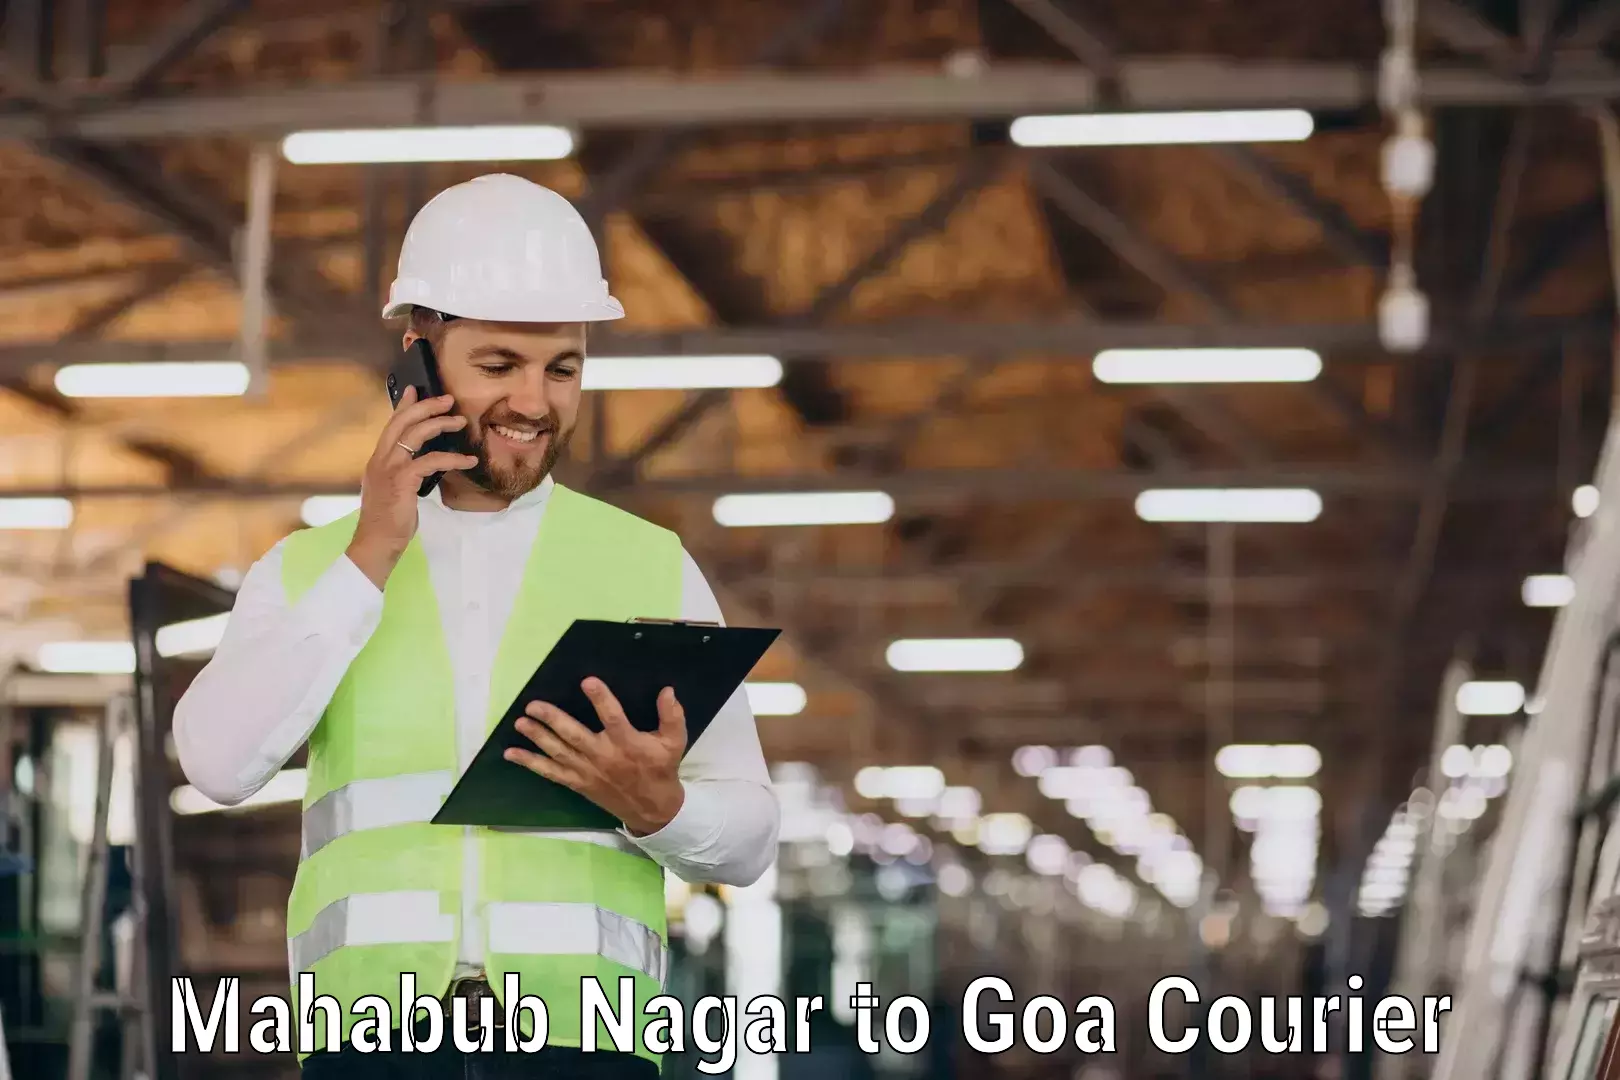 Professional courier handling Mahabub Nagar to South Goa